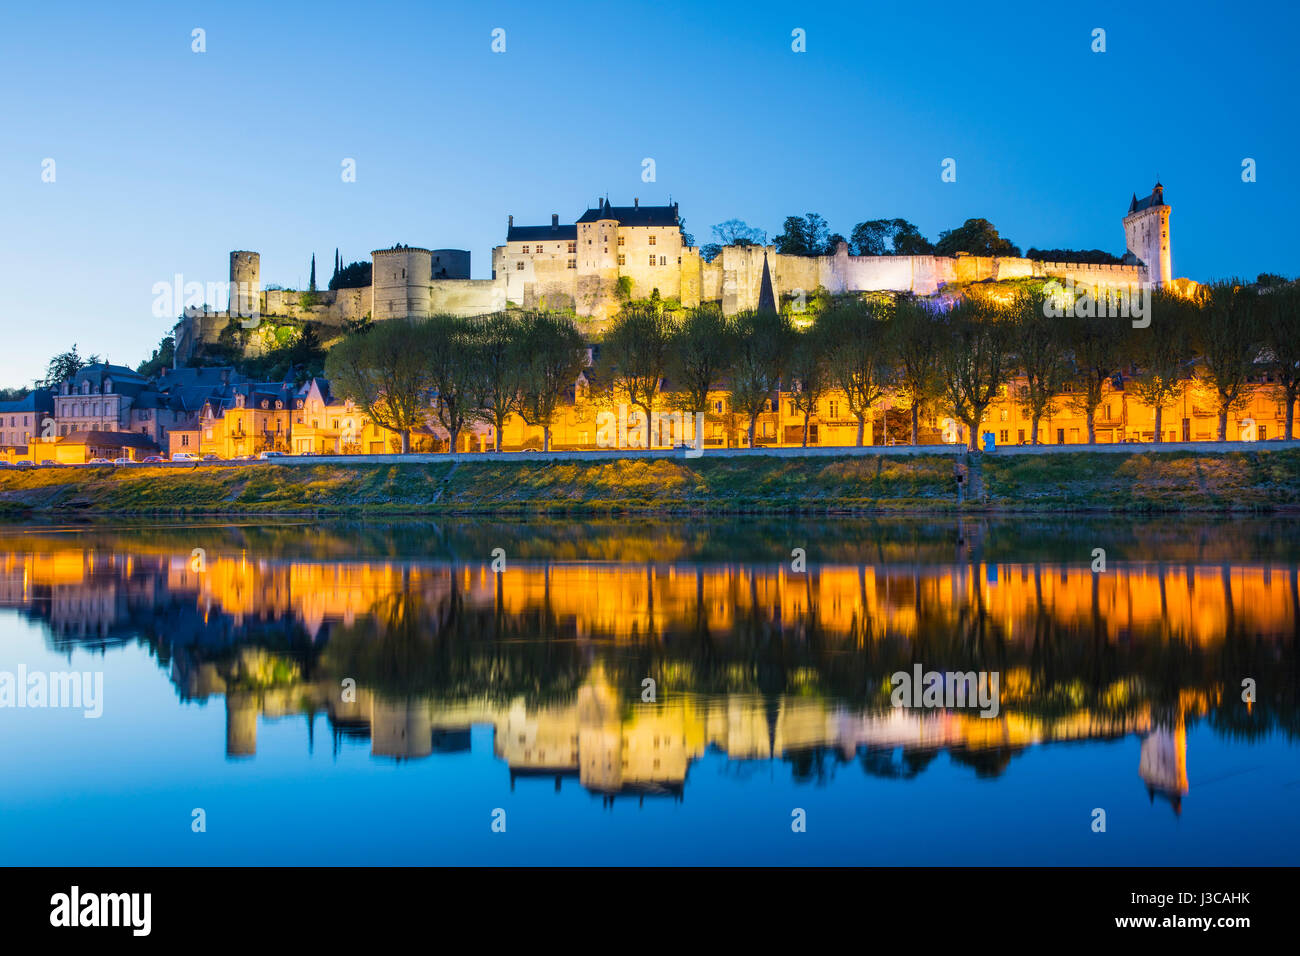 Le château de Chinon par nuit, vallée de la loire classée au patrimoine mondial de l'UNESCO, Banque D'Images